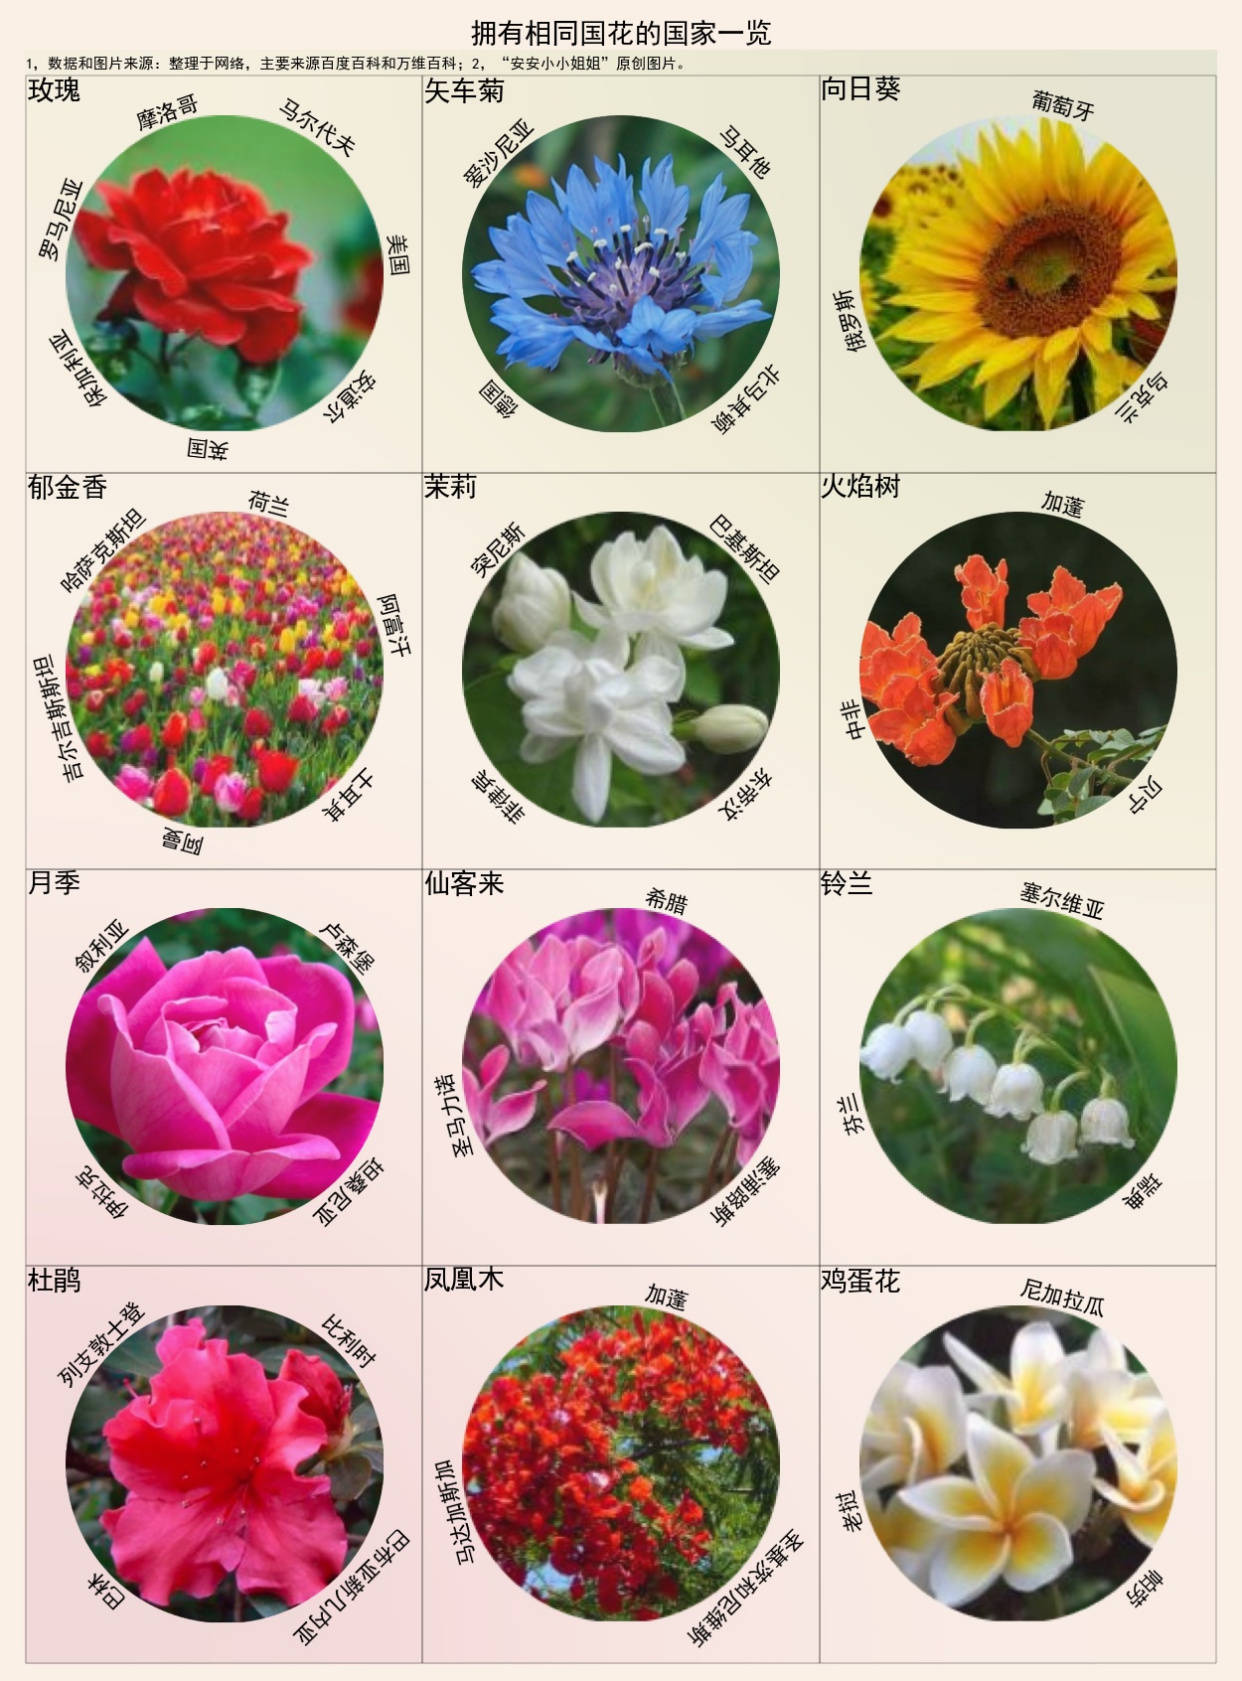 世界各国的国花及象征图片